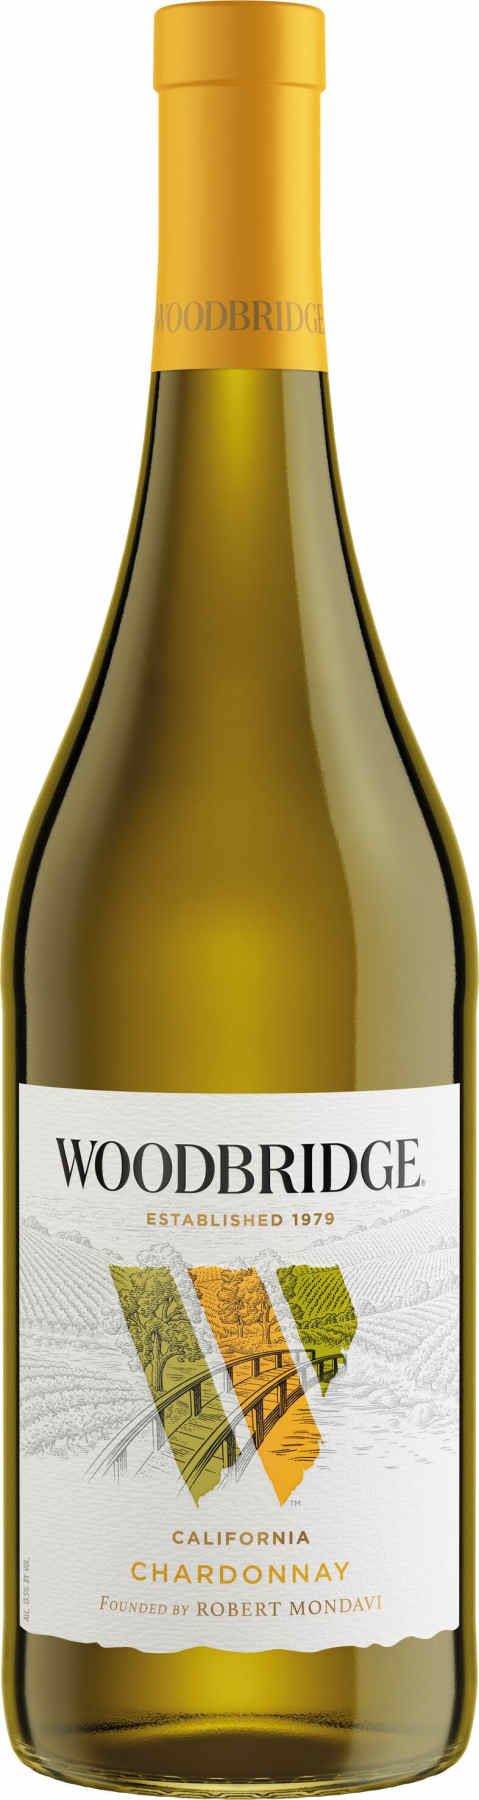 Robert Mondavi Woodbridge Chardonnay | trocken | Weißwein | Vinoscout